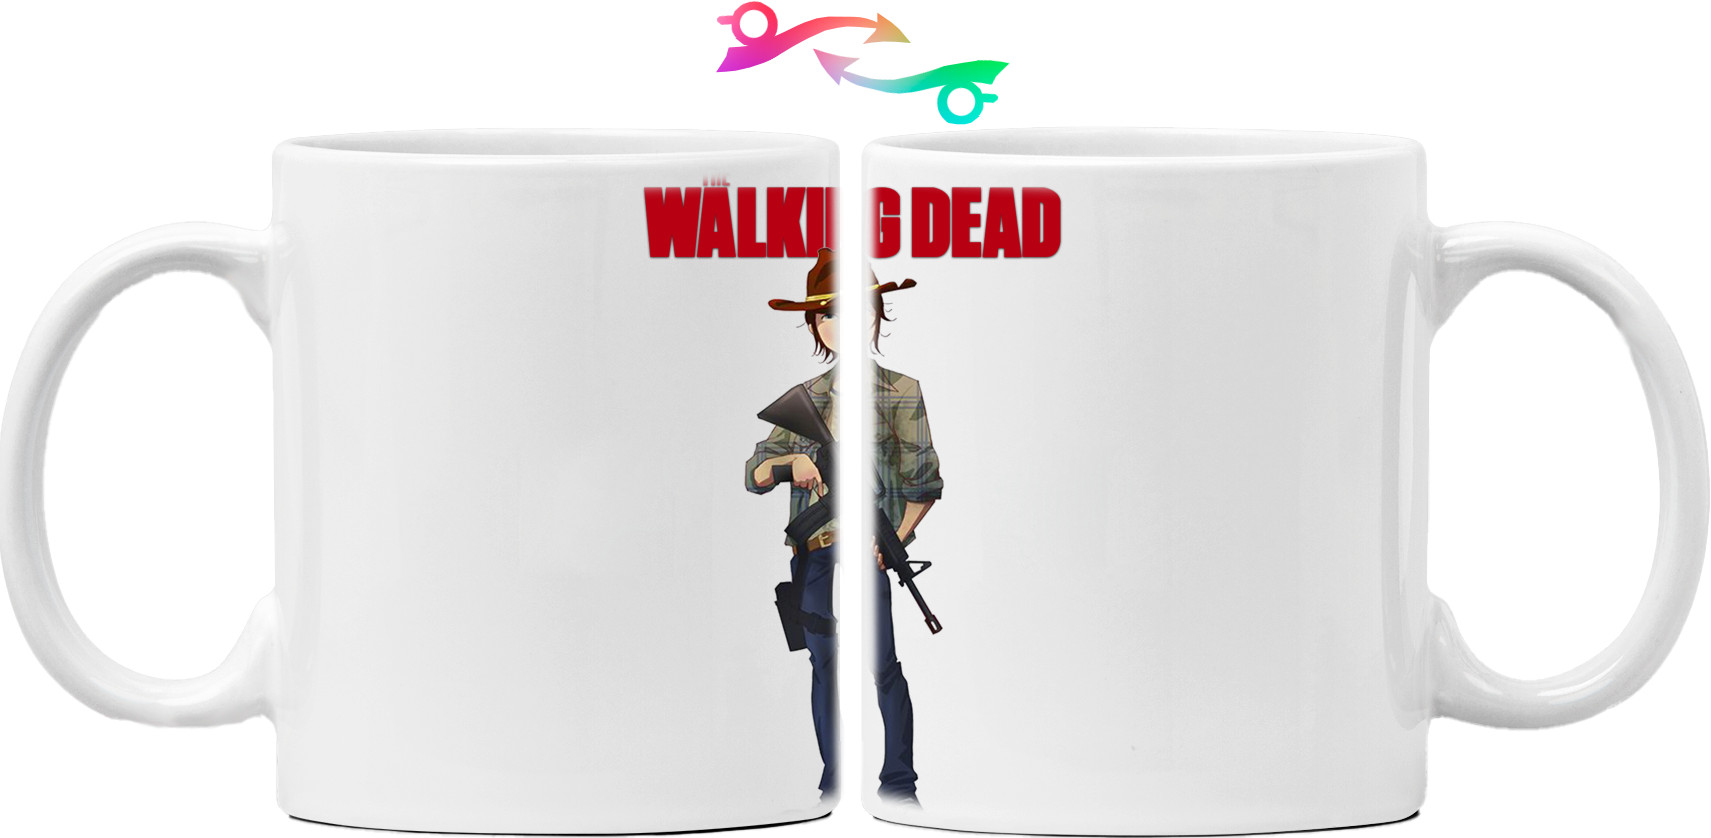 Walking Dead Carl Grimes 3